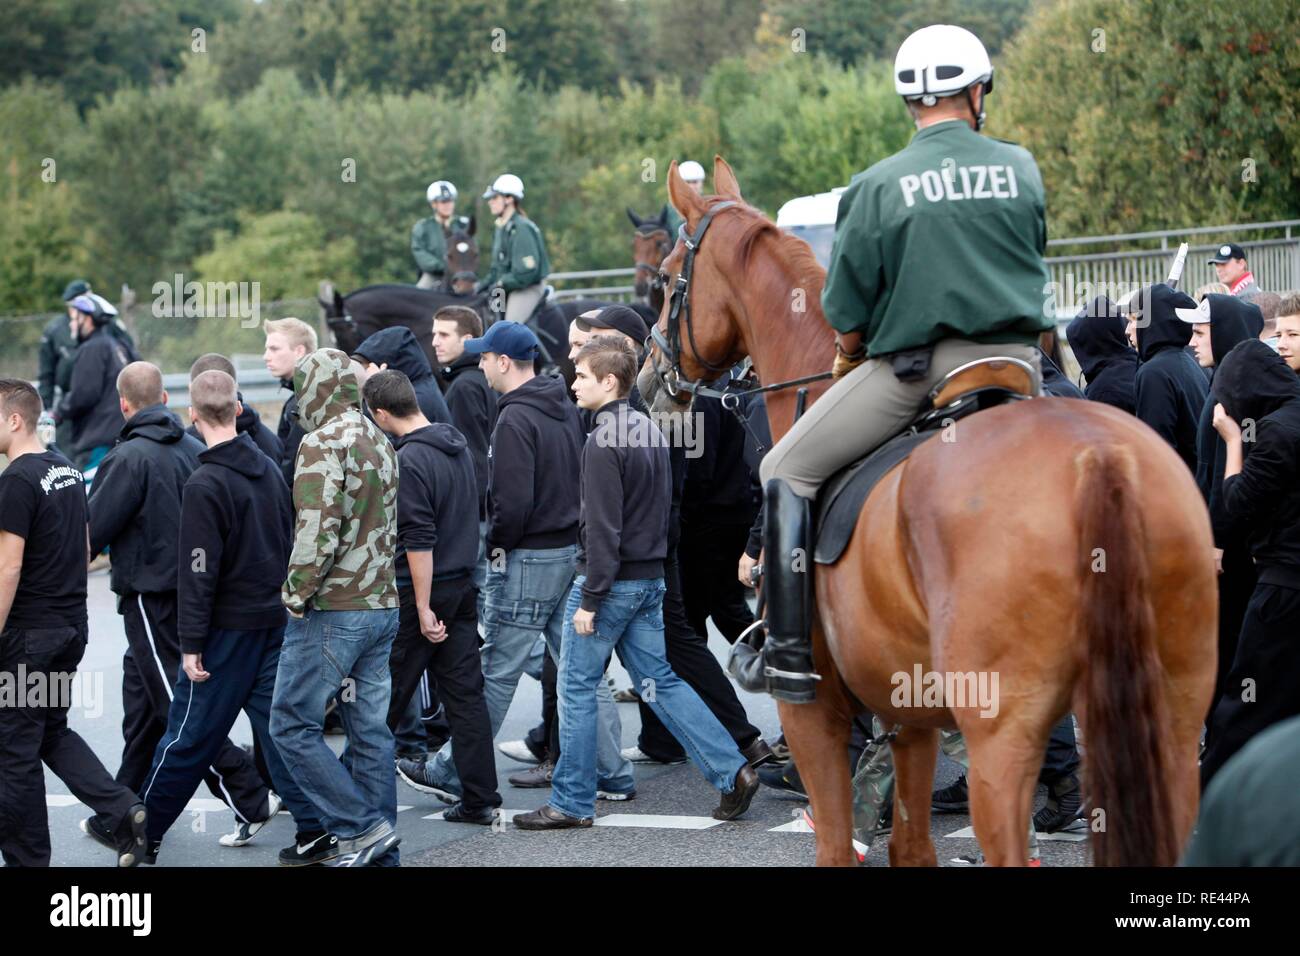 La policía montada en una operación policial en un partido de fútbol, acompañando a los fans del estadio Foto de stock